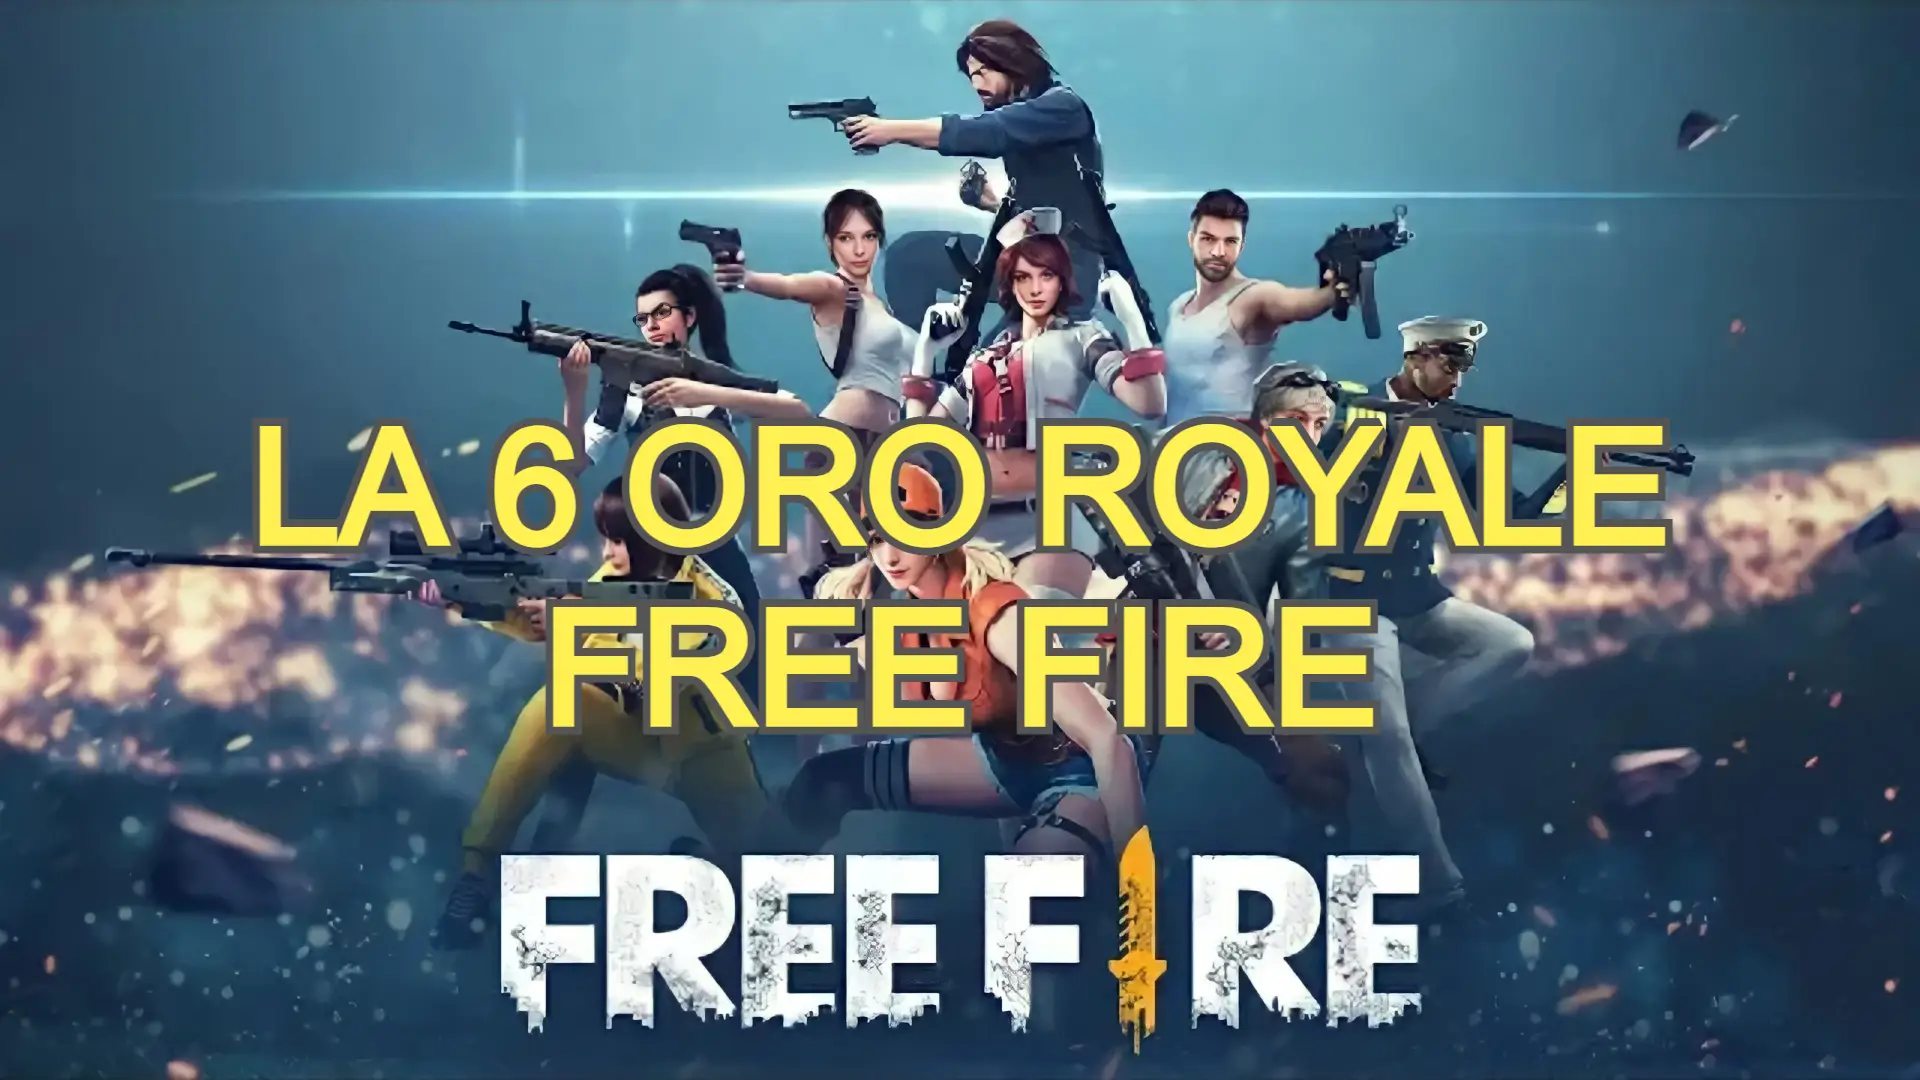 La 6 oro royale free fire más facheras de la historia